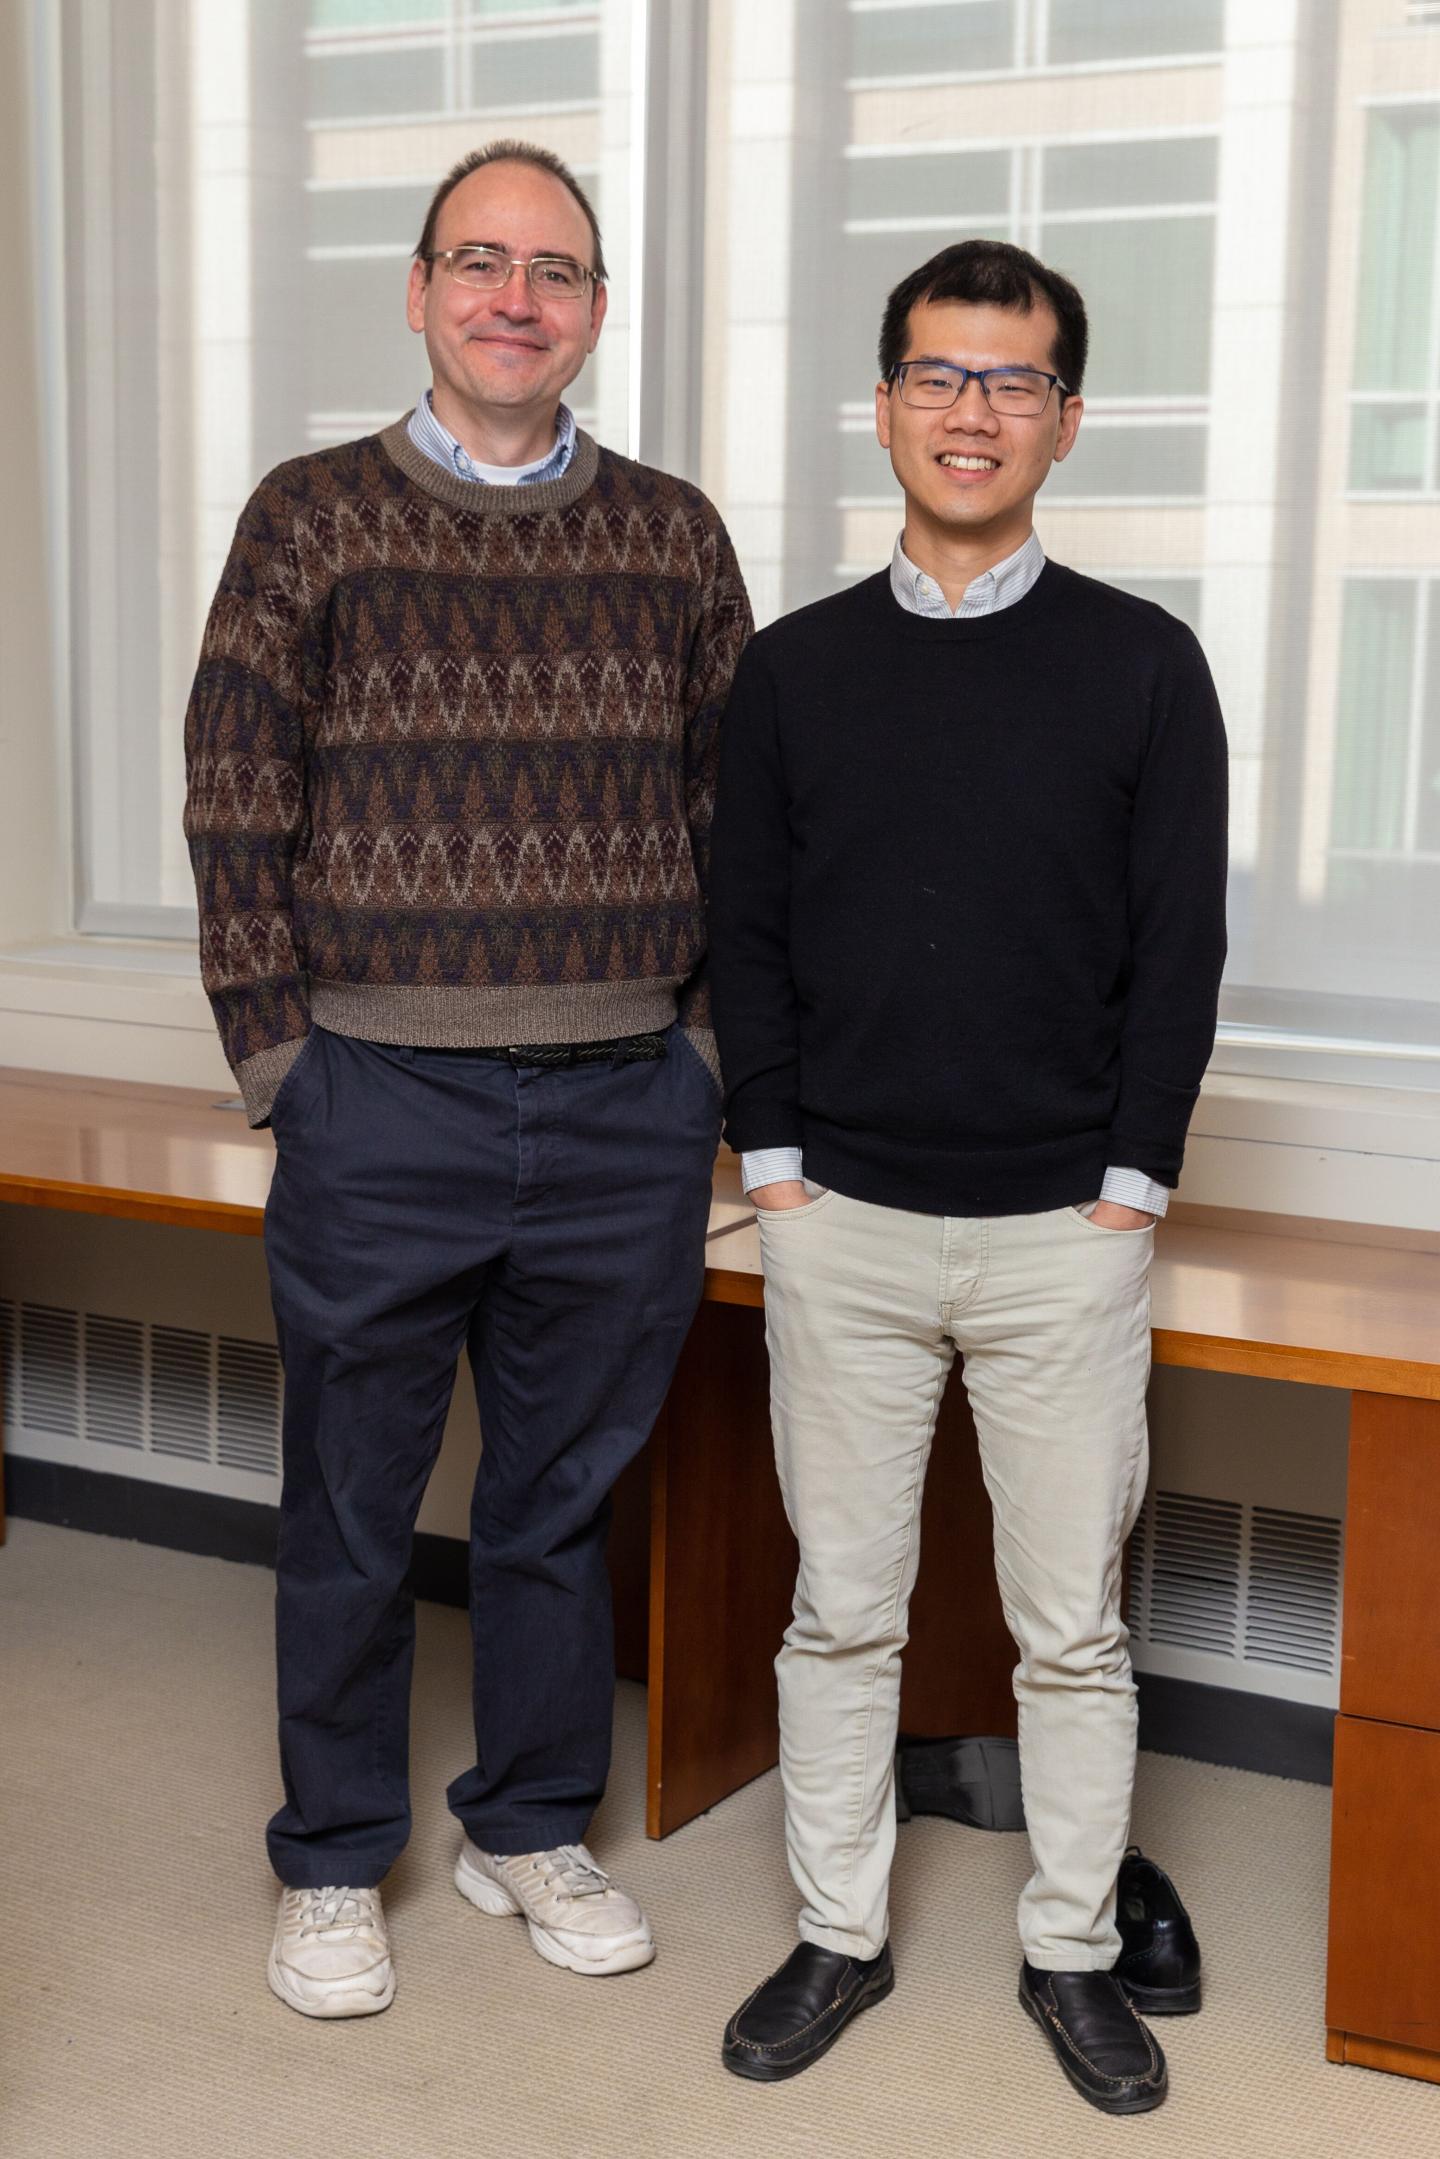 MIT's Braatz and Stanford's Chueh